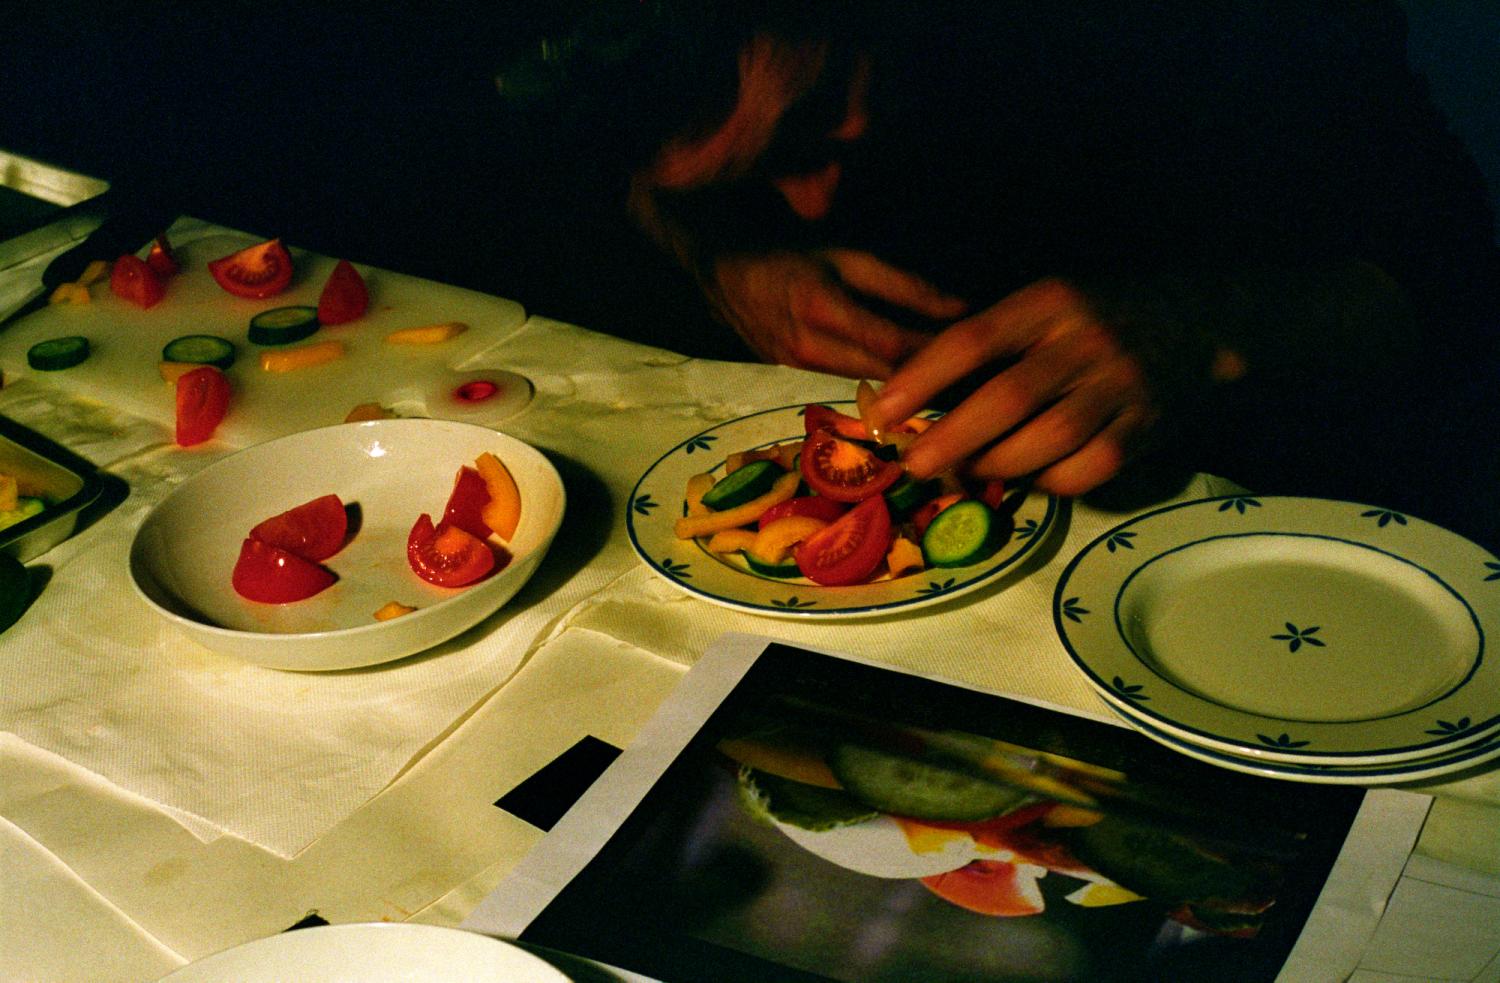 Tournage d'une publicité pour de la mayonnaise : le designer culinaire prépare une assiette de salade d'après une photo fournie par le client. Gennevilliers, décembre 2007.